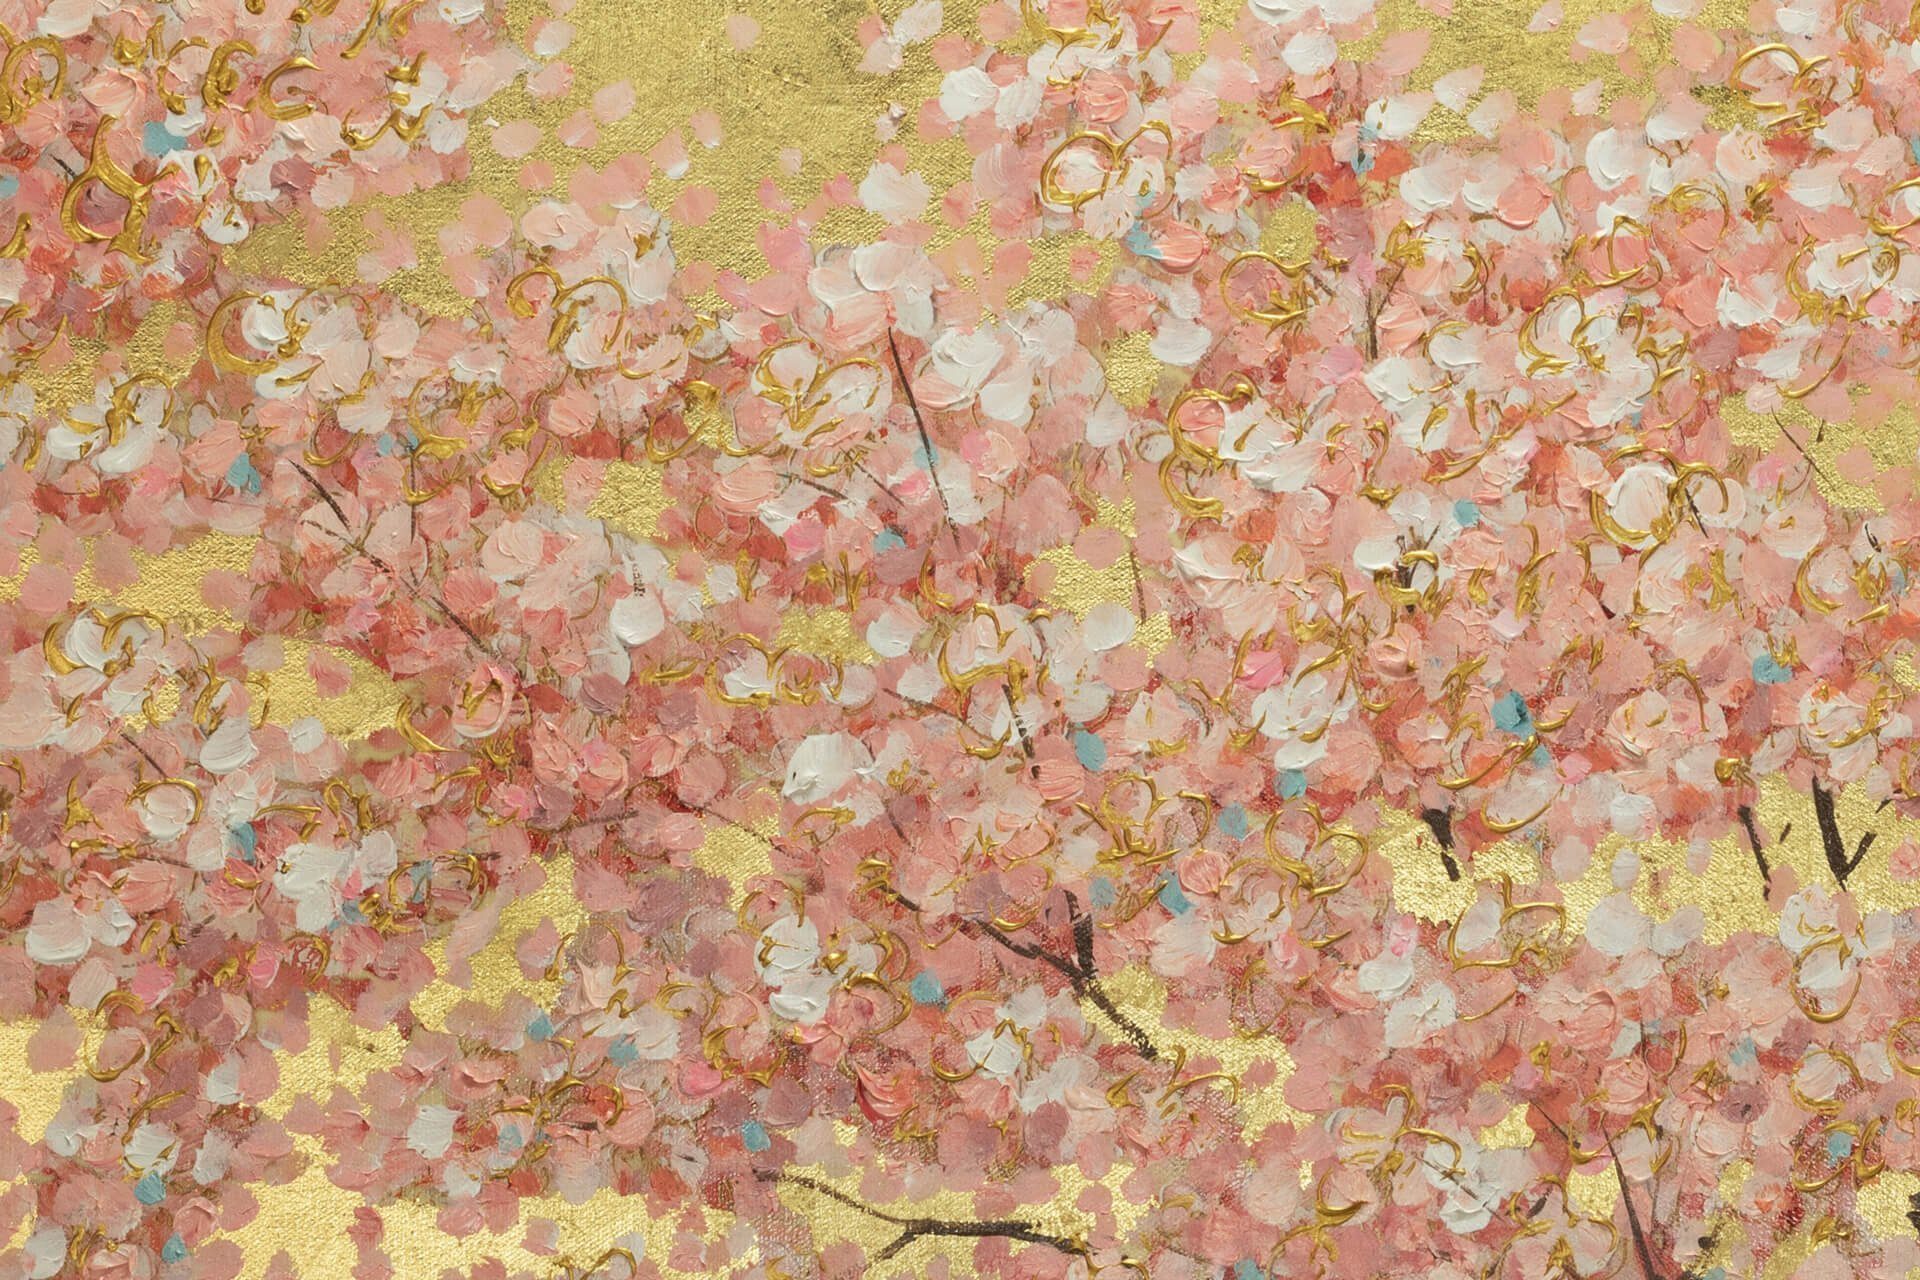 Blumenduft 120x60 cm, 100% Leinwandbild Wohnzimmer Erster Gemälde Wandbild HANDGEMALT KUNSTLOFT